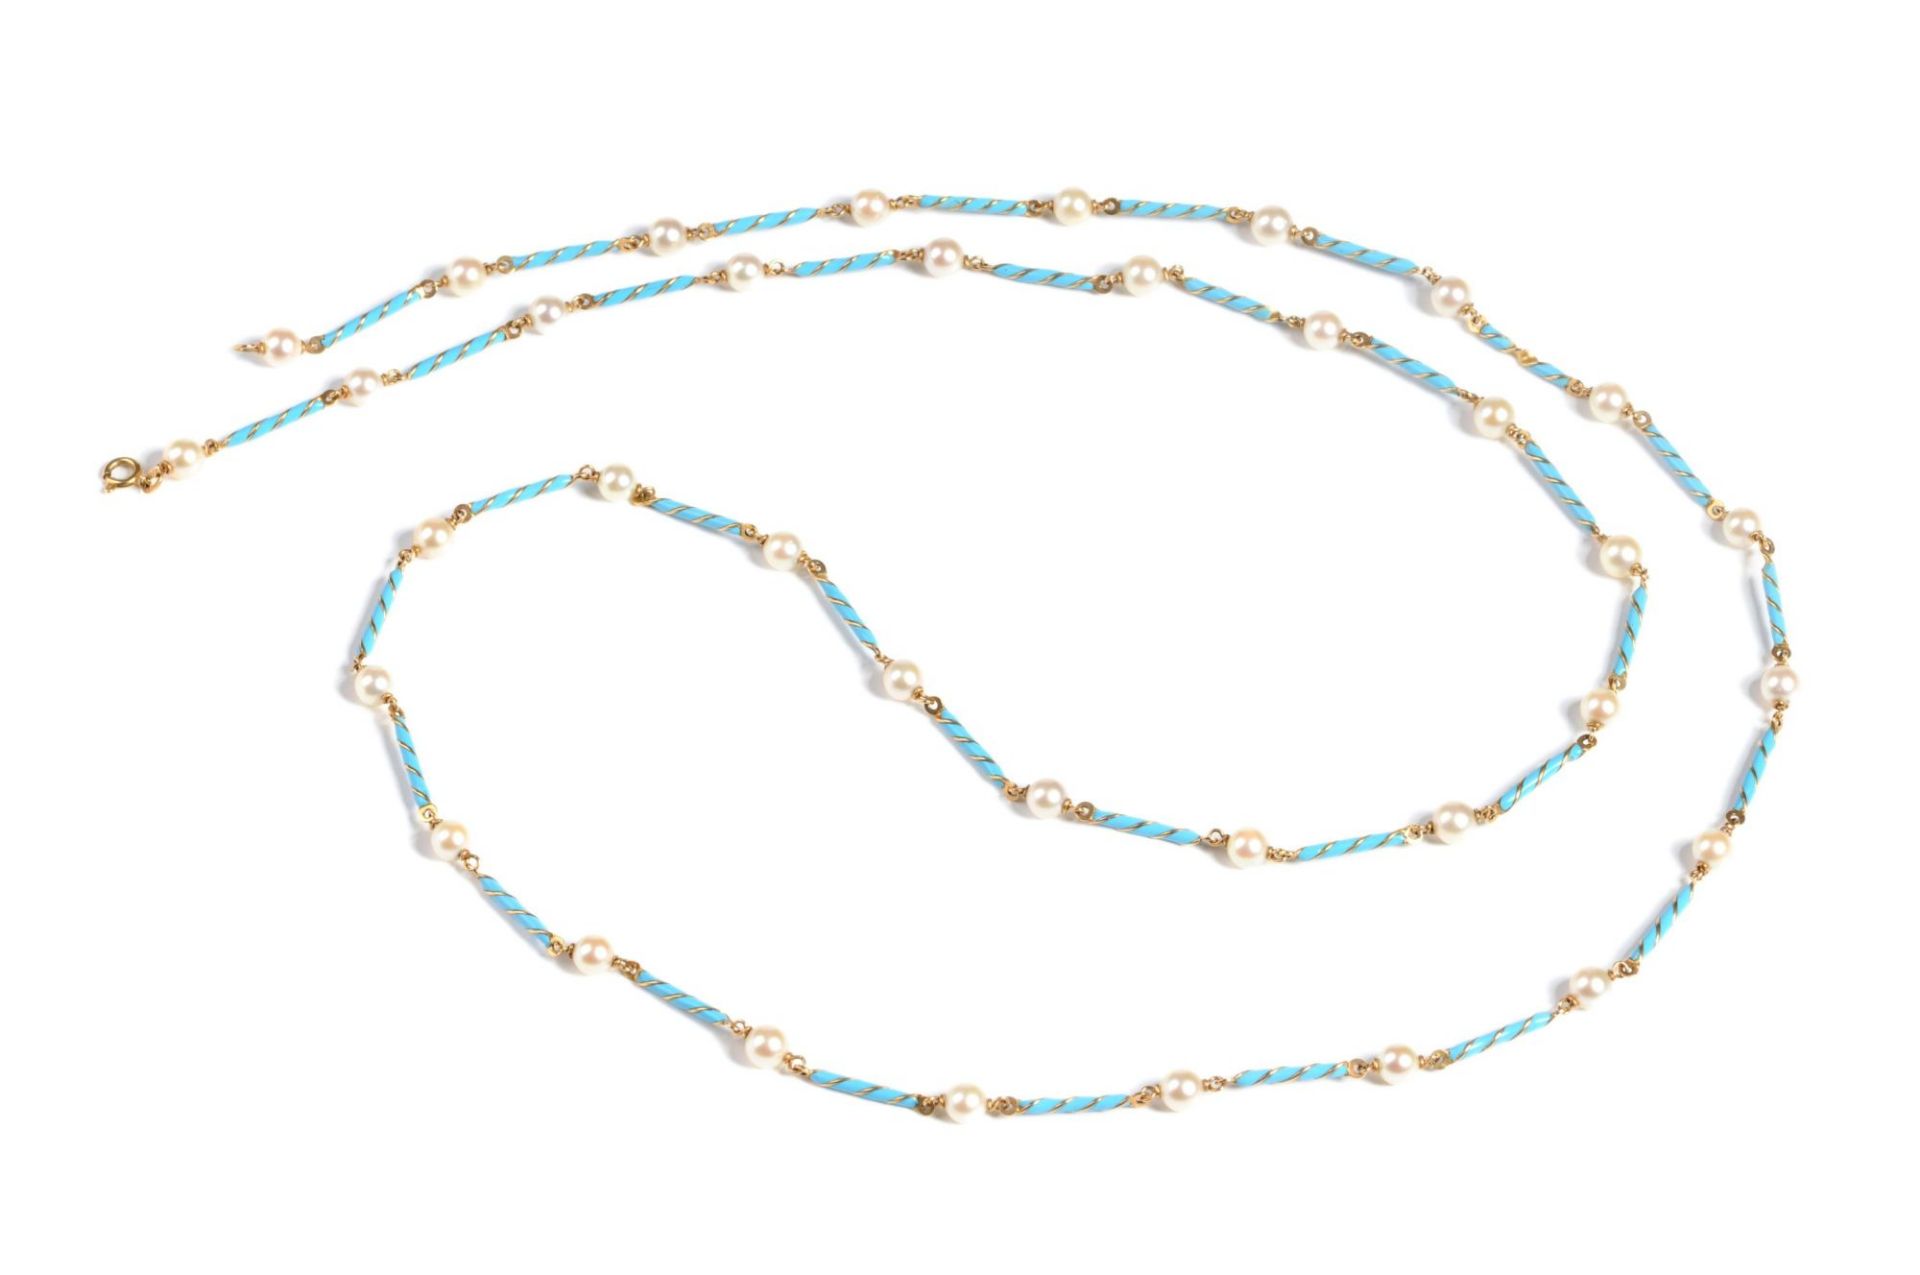 Lange Kette mit Perlen und türkisfarben emaillierten Zwischengliedern. Fabor, Sansepolcro, Arezz